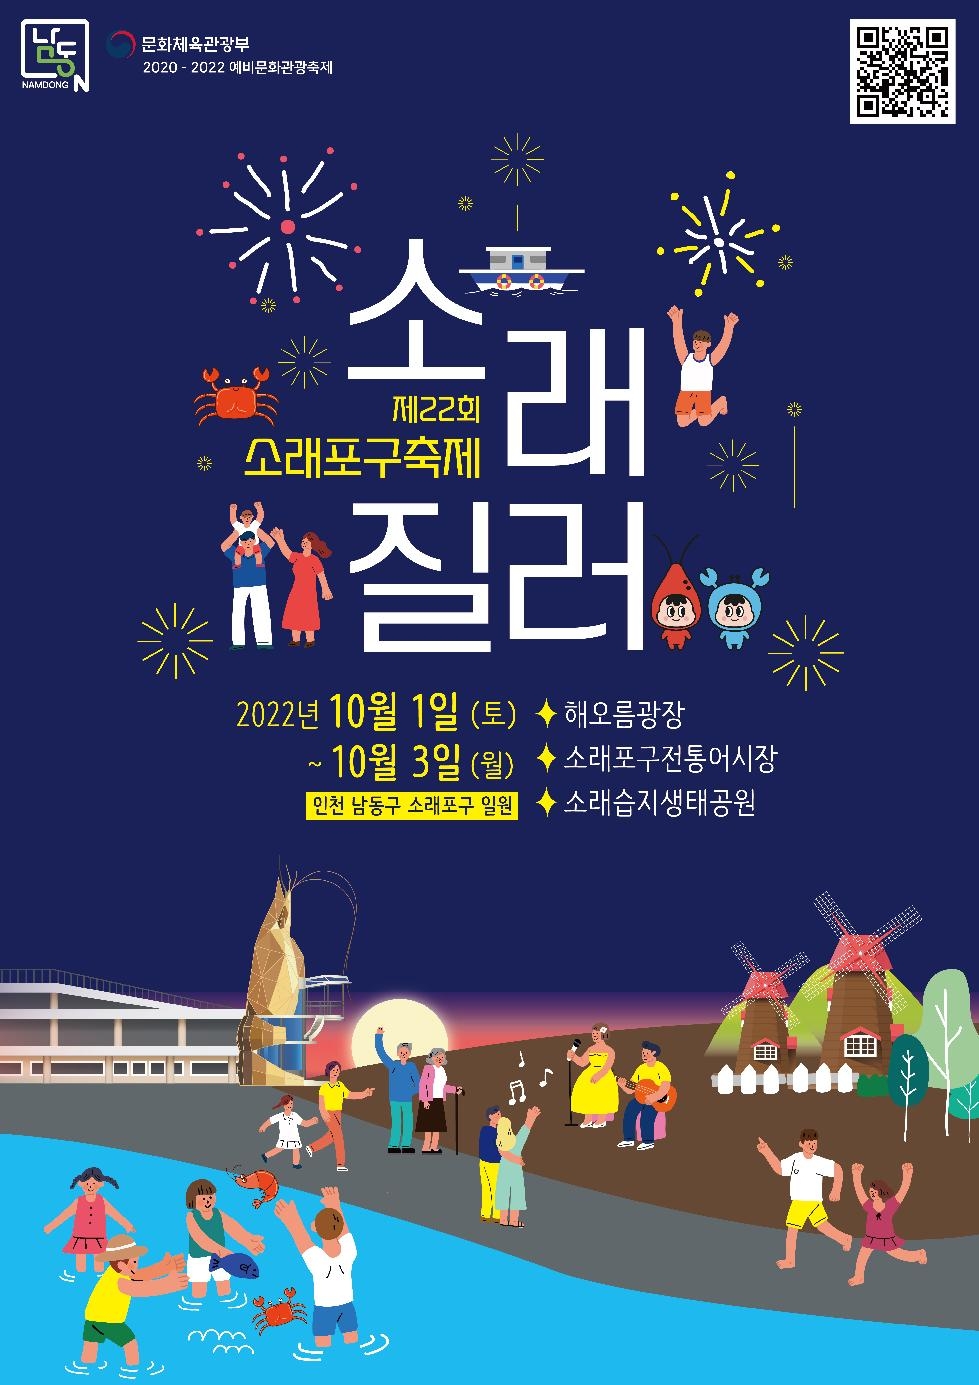 인천 남동구 소래질러!’소래포구축제, 4년 만에 대면 축제로 돌아온다